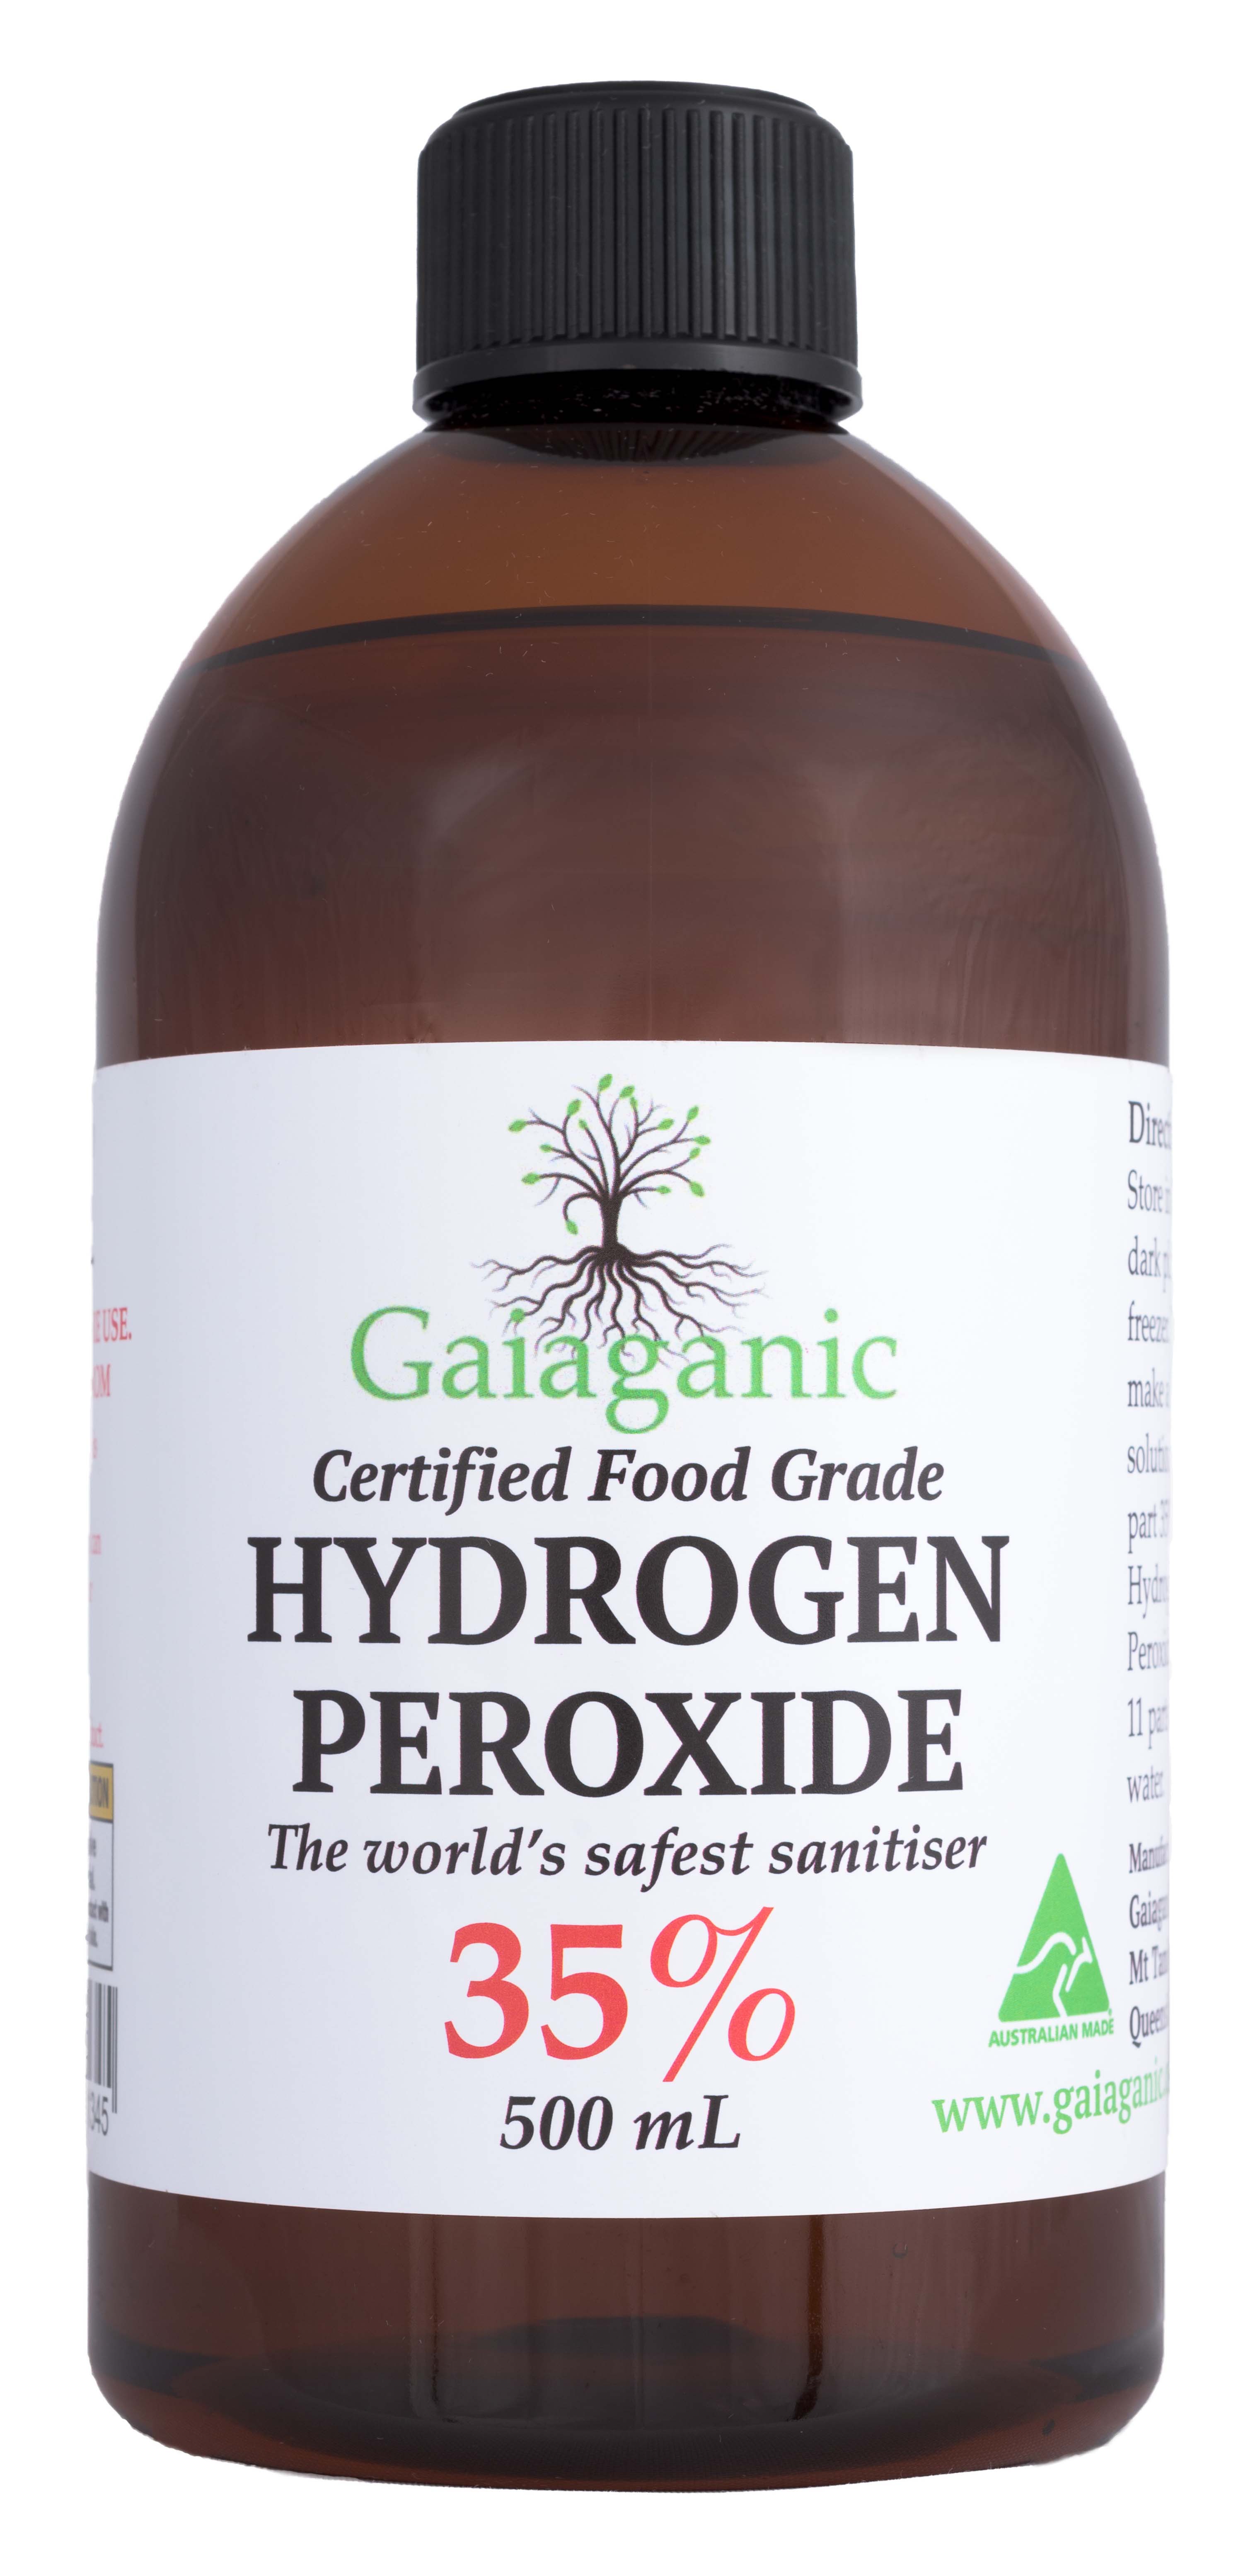 35 hydrogen peroxide one minute cure